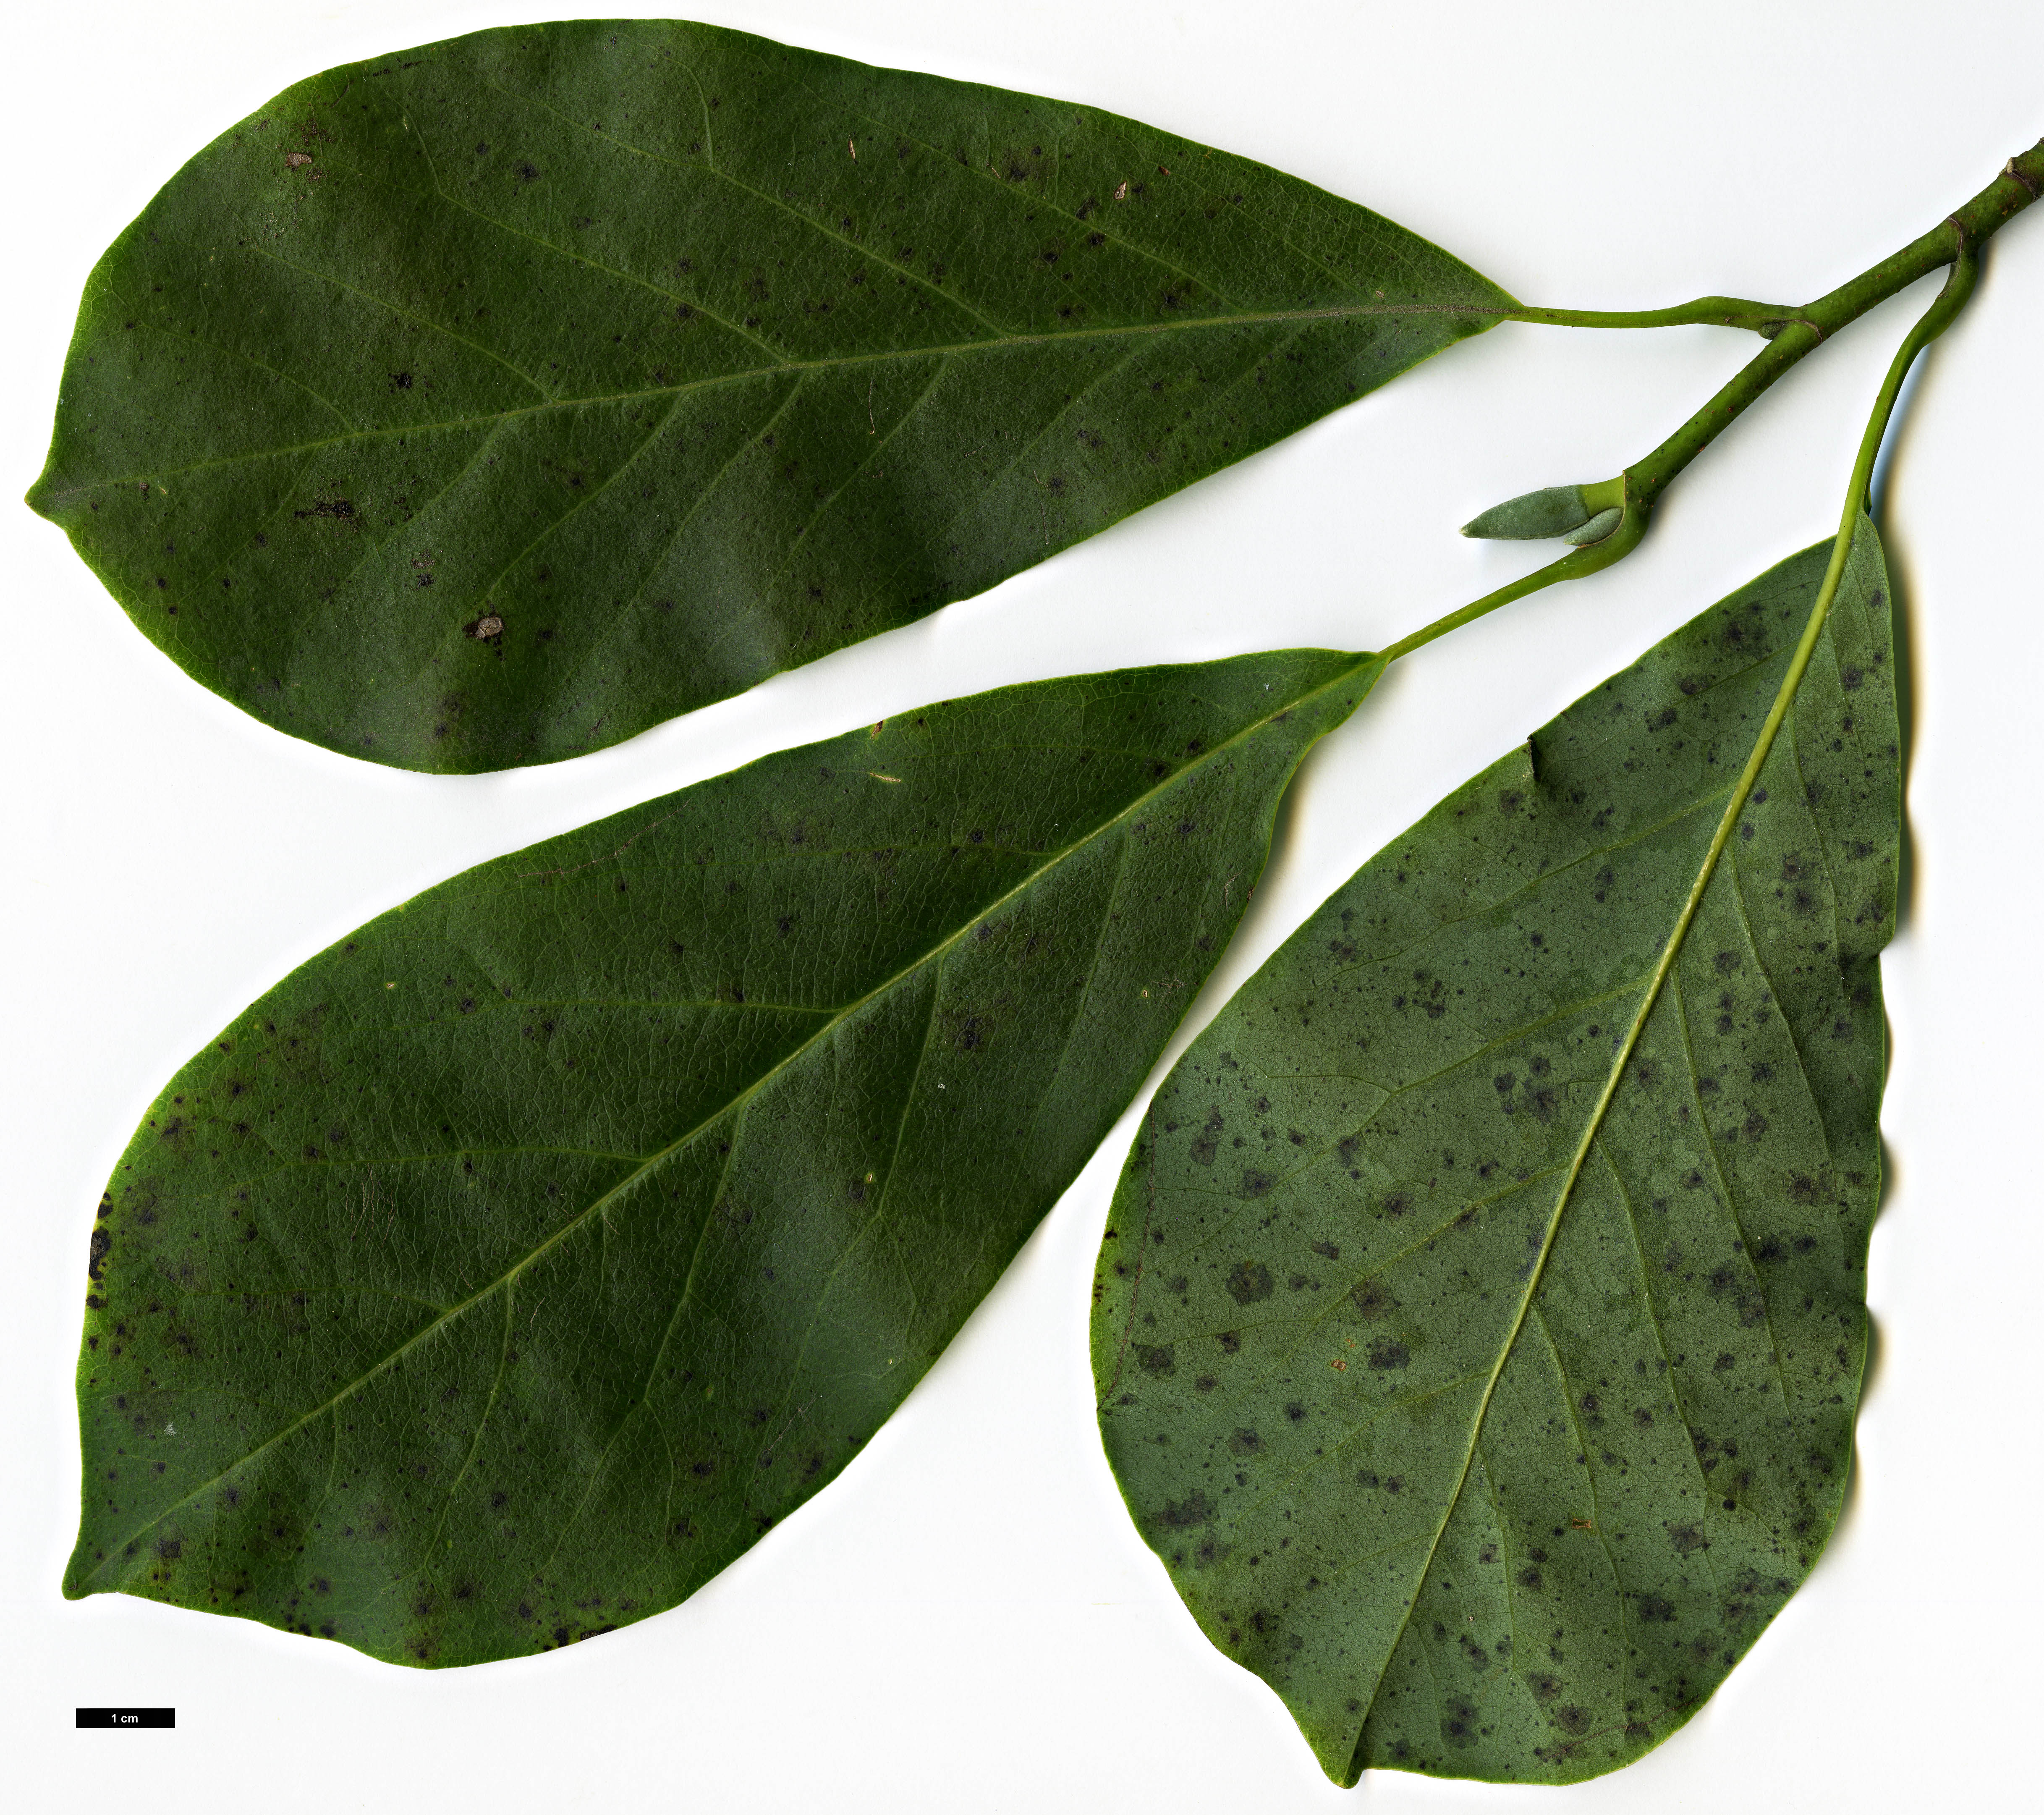 High resolution image: Family: Magnoliaceae - Genus: Magnolia - Taxon: sprengeri - SpeciesSub: var. elongata 